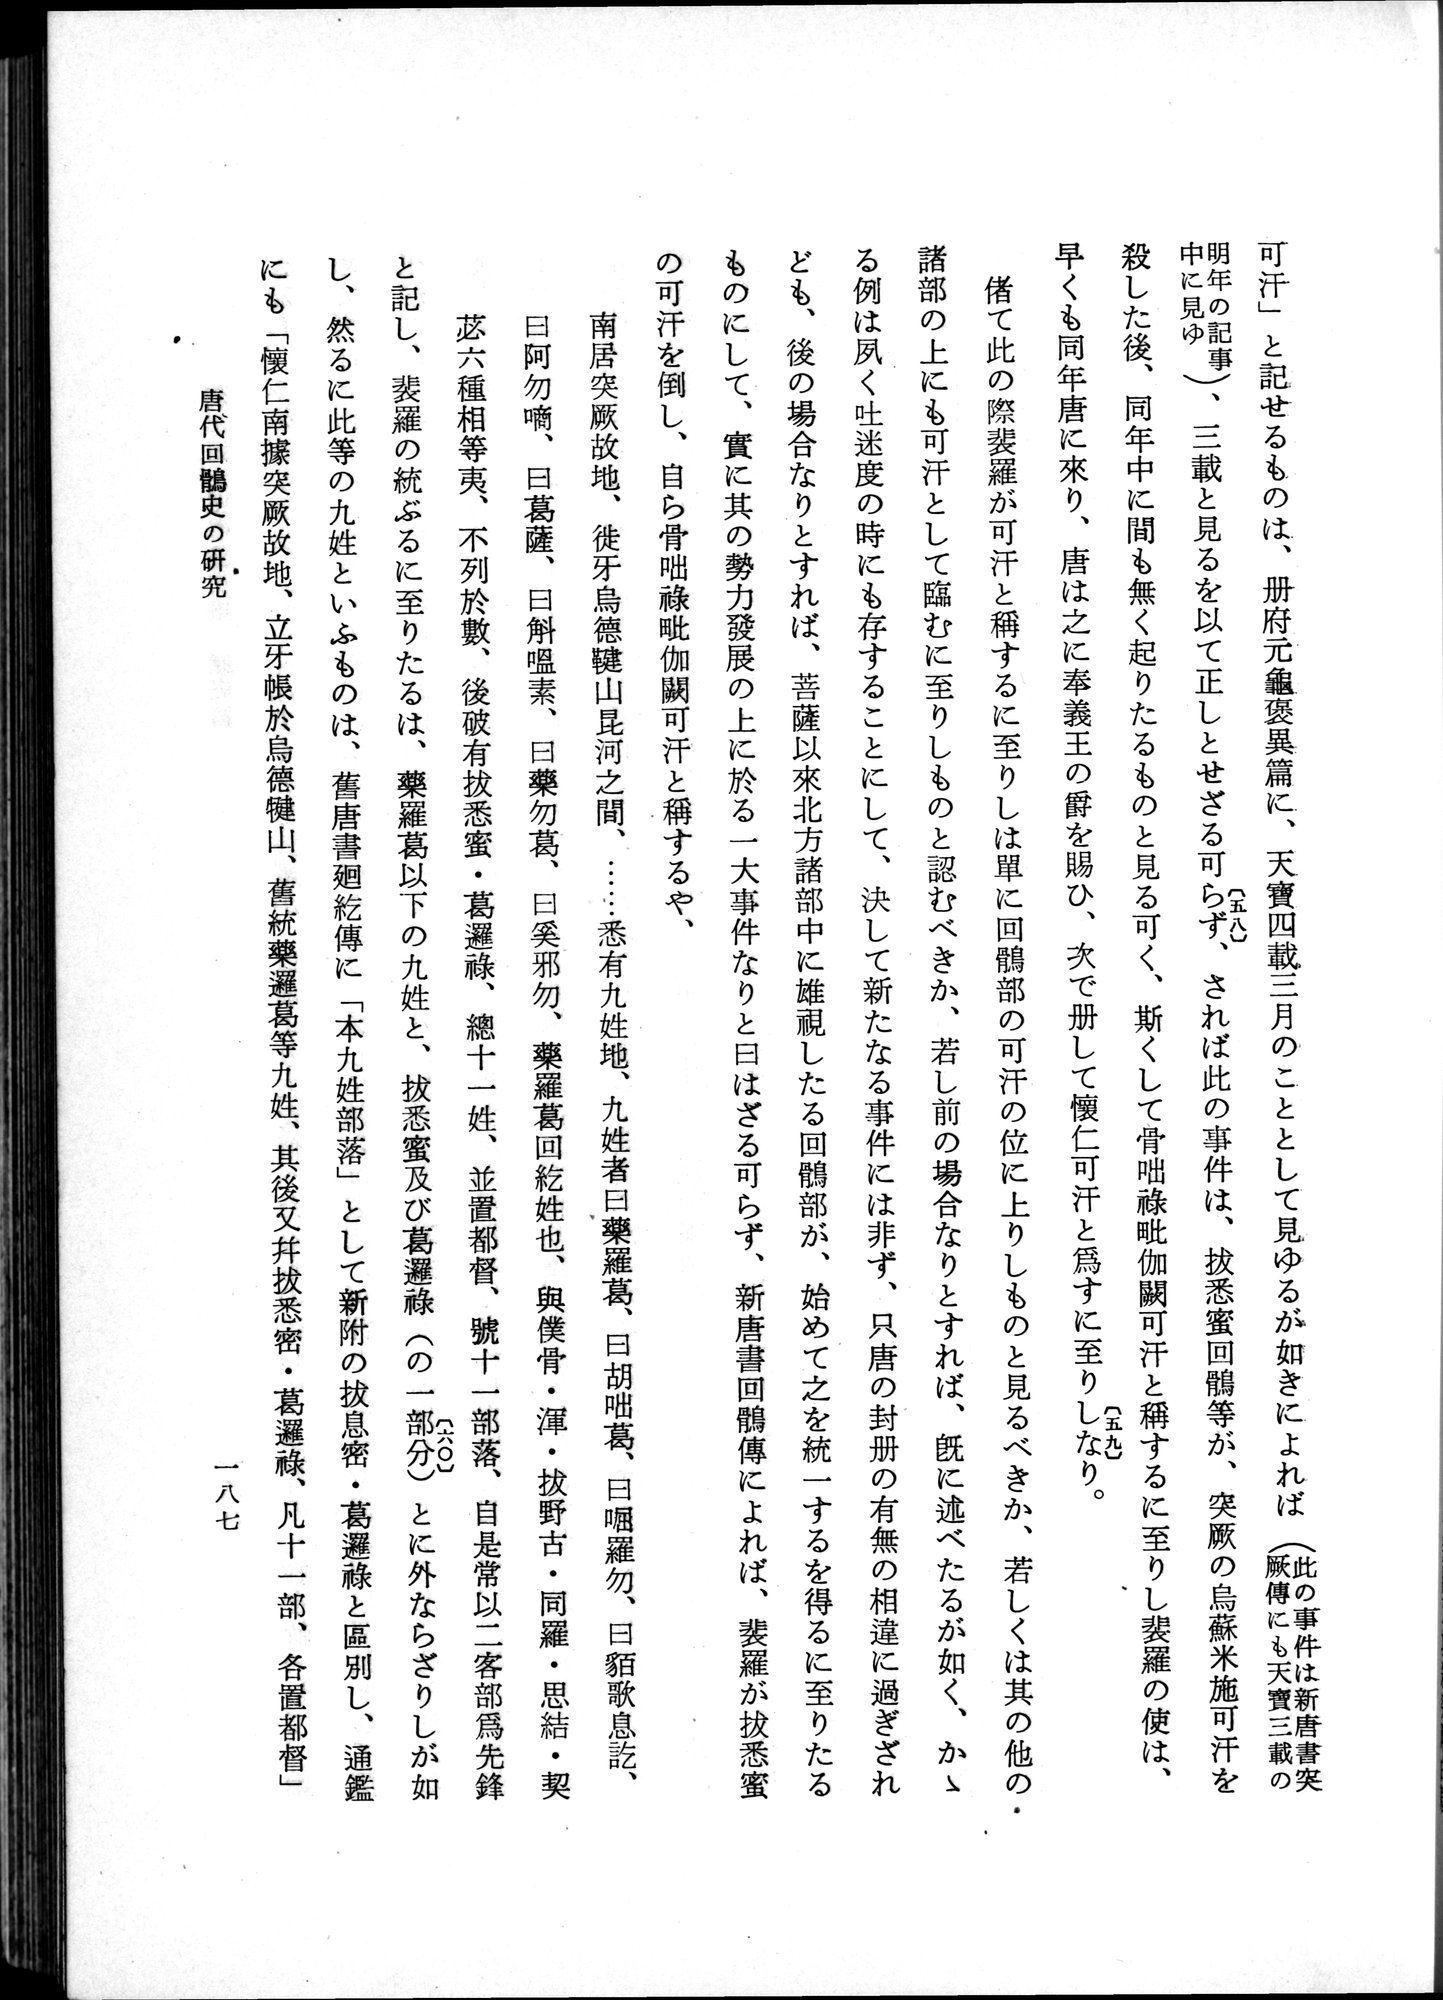 羽田博士史学論文集 : vol.1 / Page 225 (Grayscale High Resolution Image)